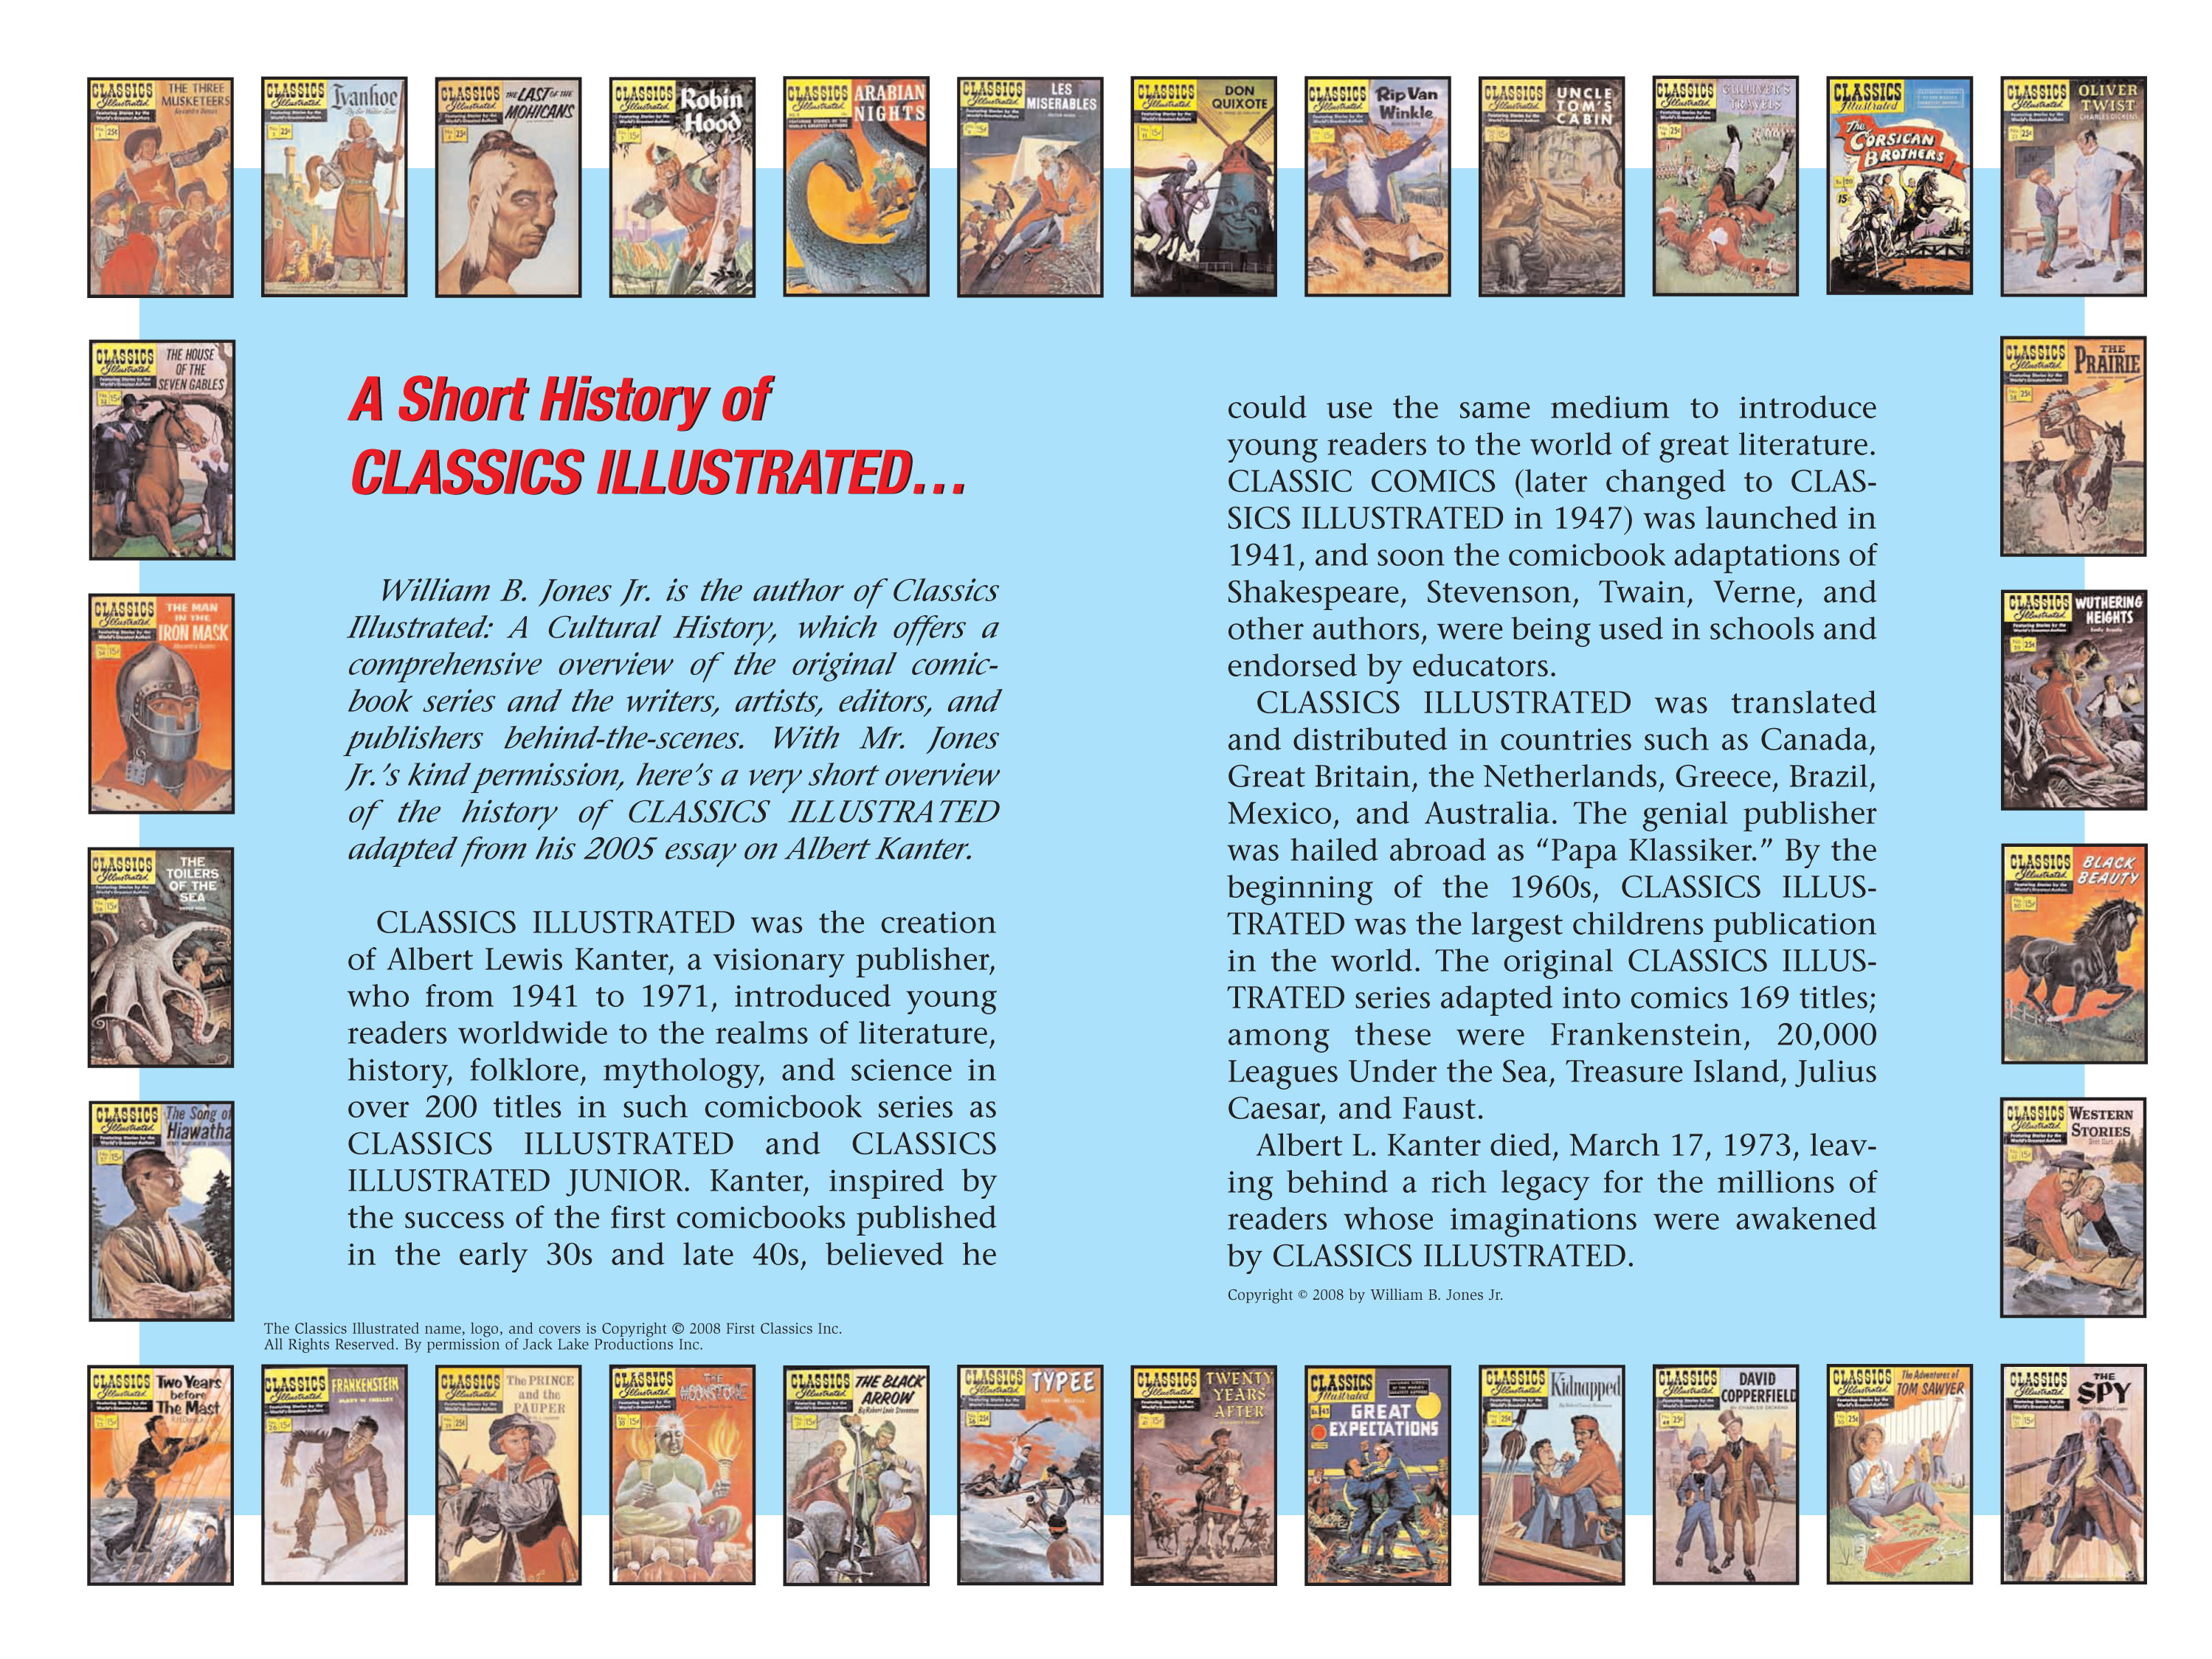 Read online Nancy Drew comic -  Issue #11 - 109